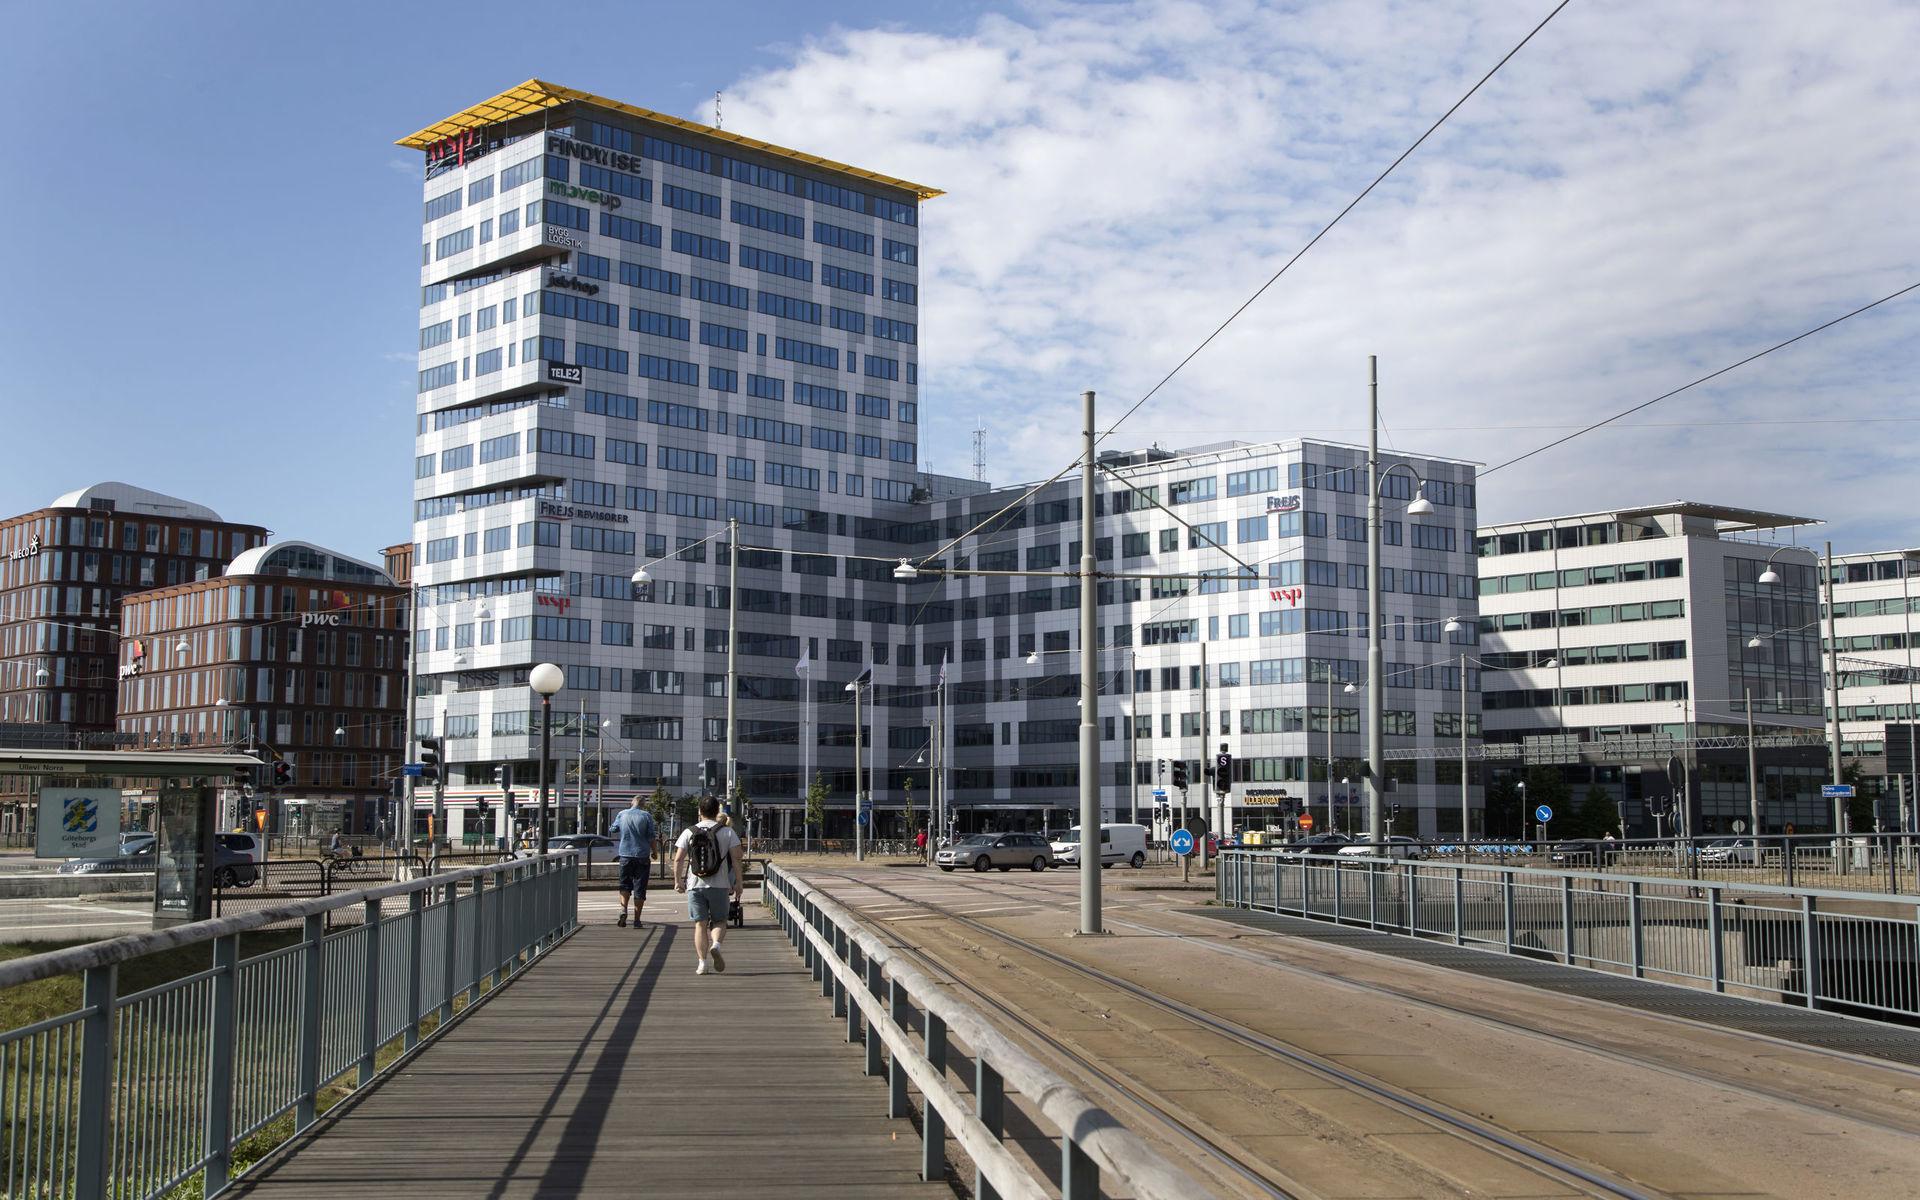 Bland de nya höghusen finns också WSP-huset som är ett av många som dykt upp i Göteborg efter Läppstiftet. Som förvånansvärt många andra byggnader i staden är den också ungefär 60 meter.